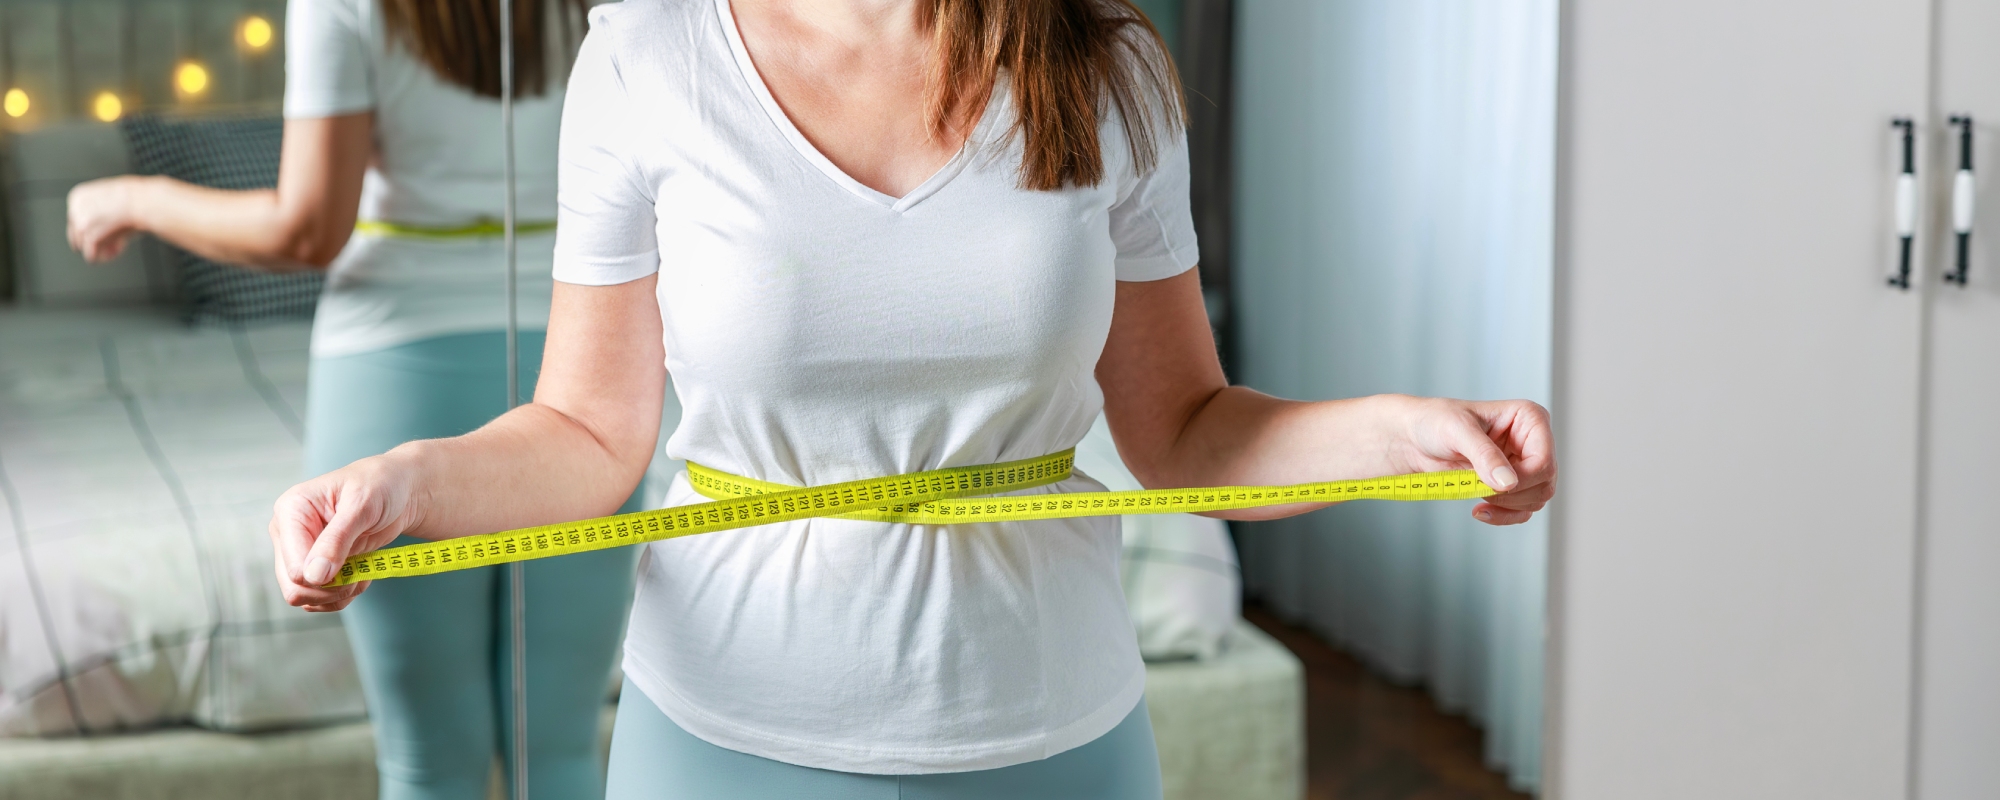 Combien de kilos peut-on perdre après une chirurgie bariatrique ?